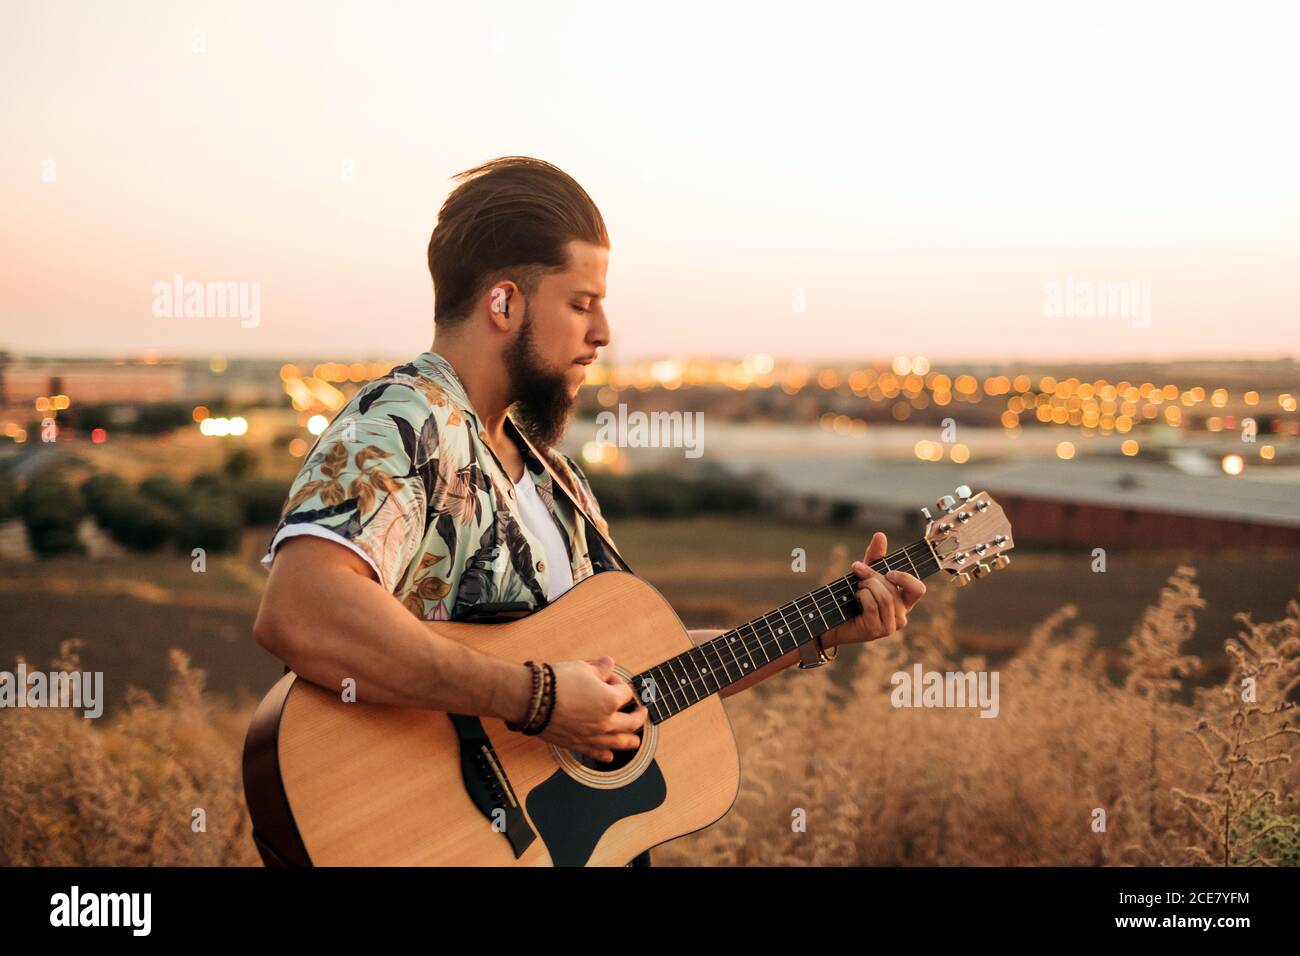 Hipster Gitarrist in Casual Wear spielen klassische Gitarre im Stehen Im  Gras hinter dem Feld bei Sonnenuntergang unter ruhigem Himmel  Stockfotografie - Alamy